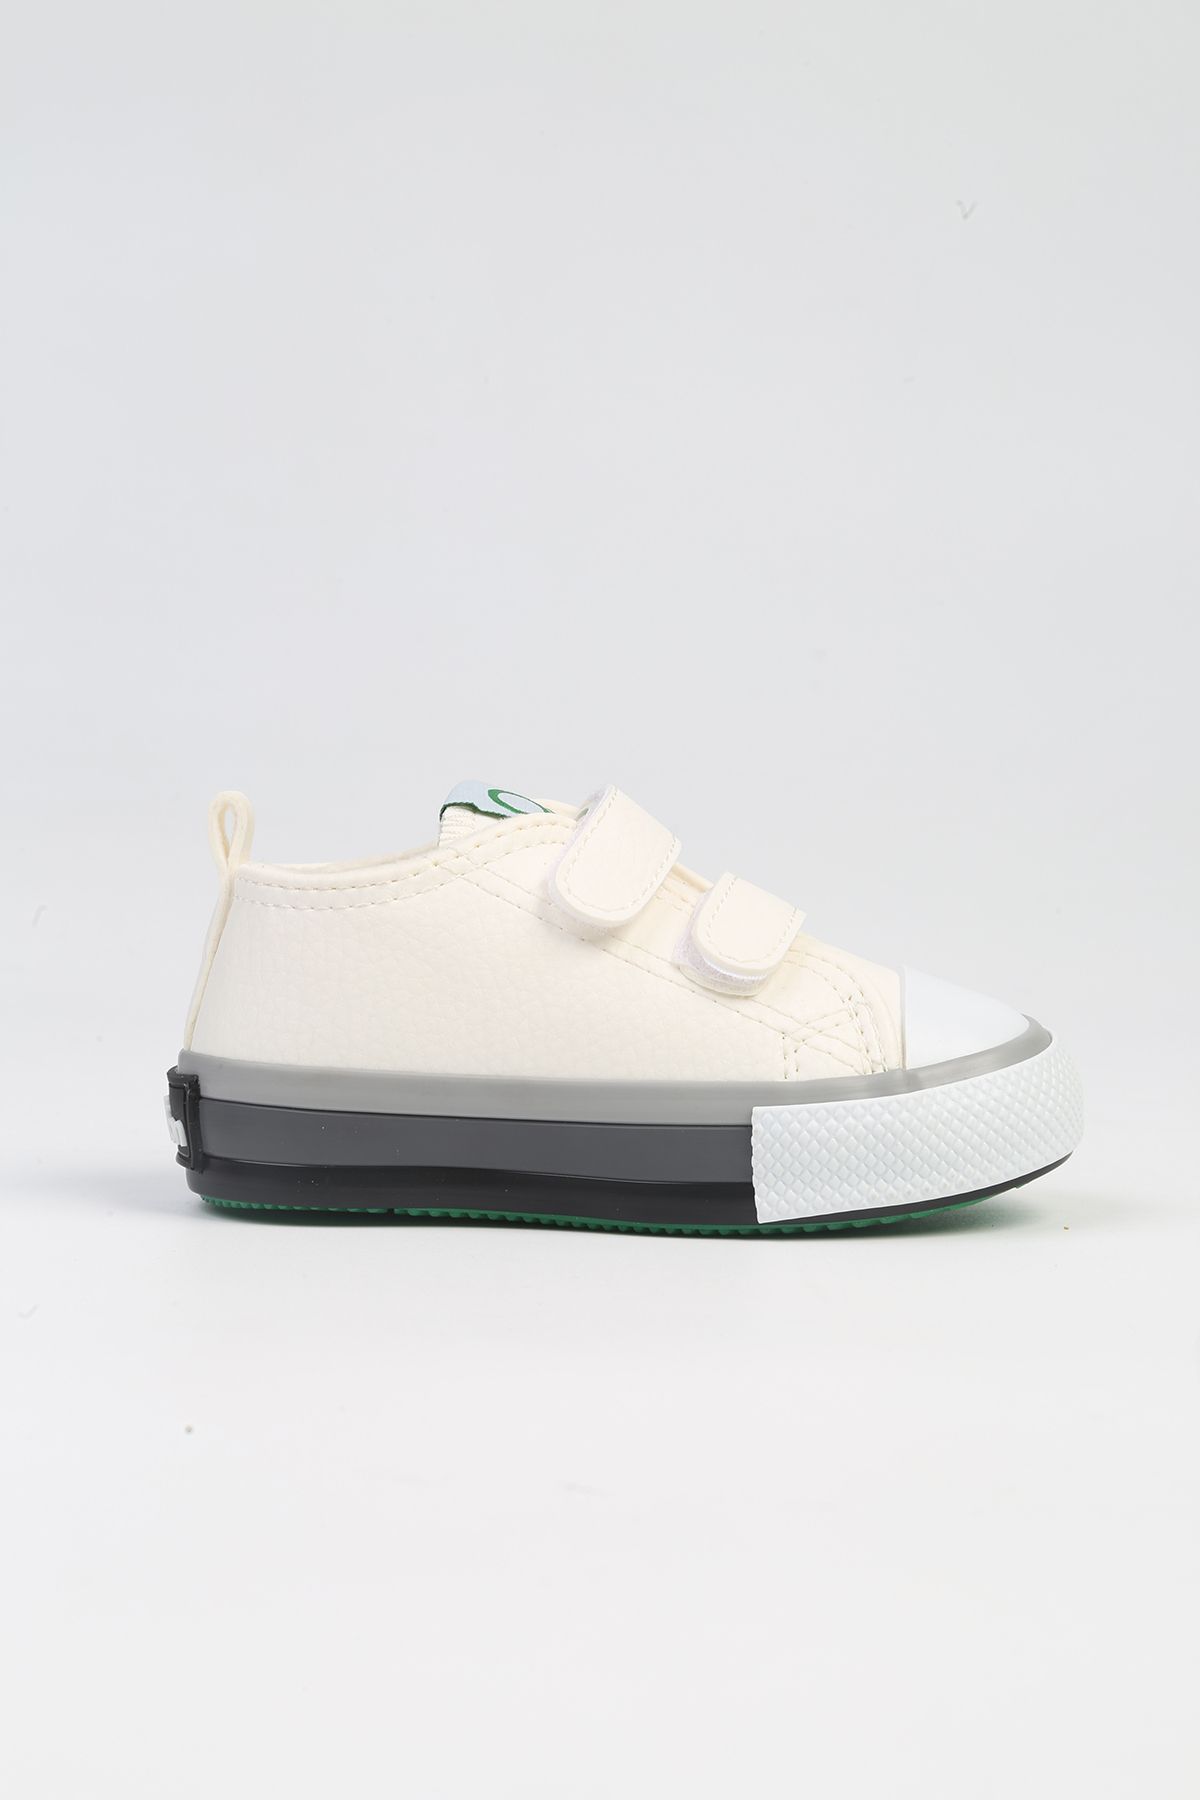 Benetton ® | BN-30807- 3394 Beyaz-Çocuk Spor Ayakkabı